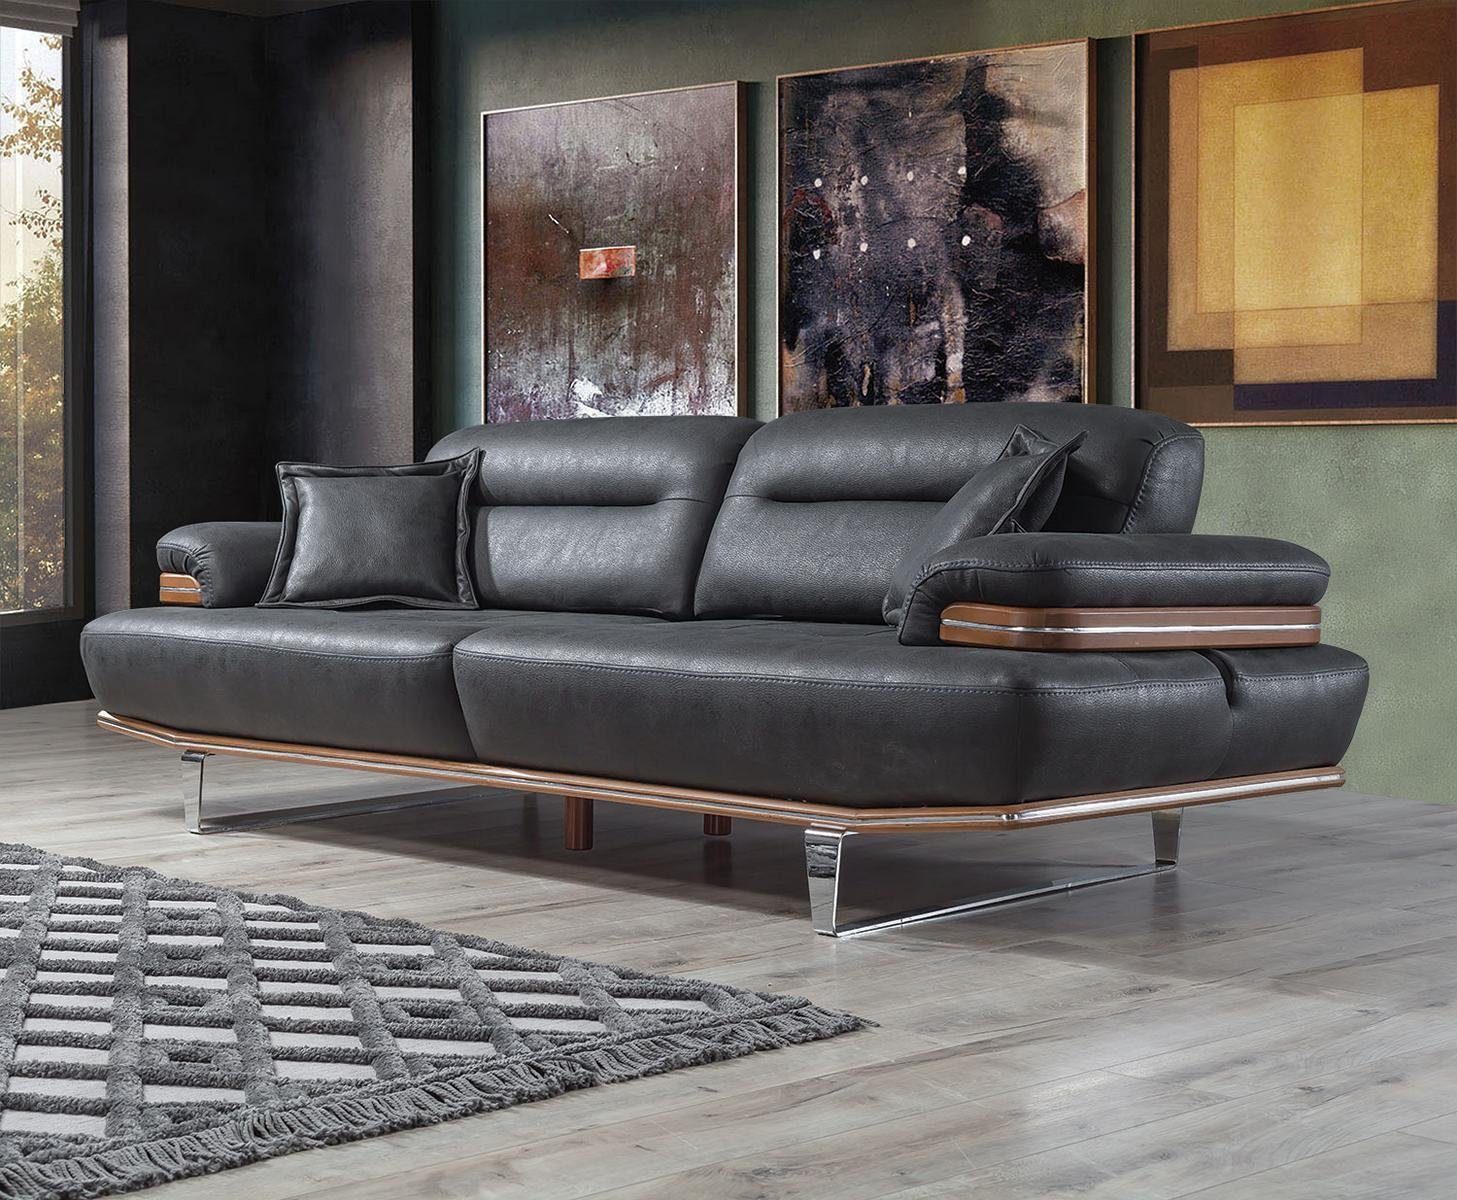 JVmoebel Sofa Wohnzimmer Sofa Couch Designer, Modern Polster Europa in 1 Dreisitzer Sitz Modern MAde Teile